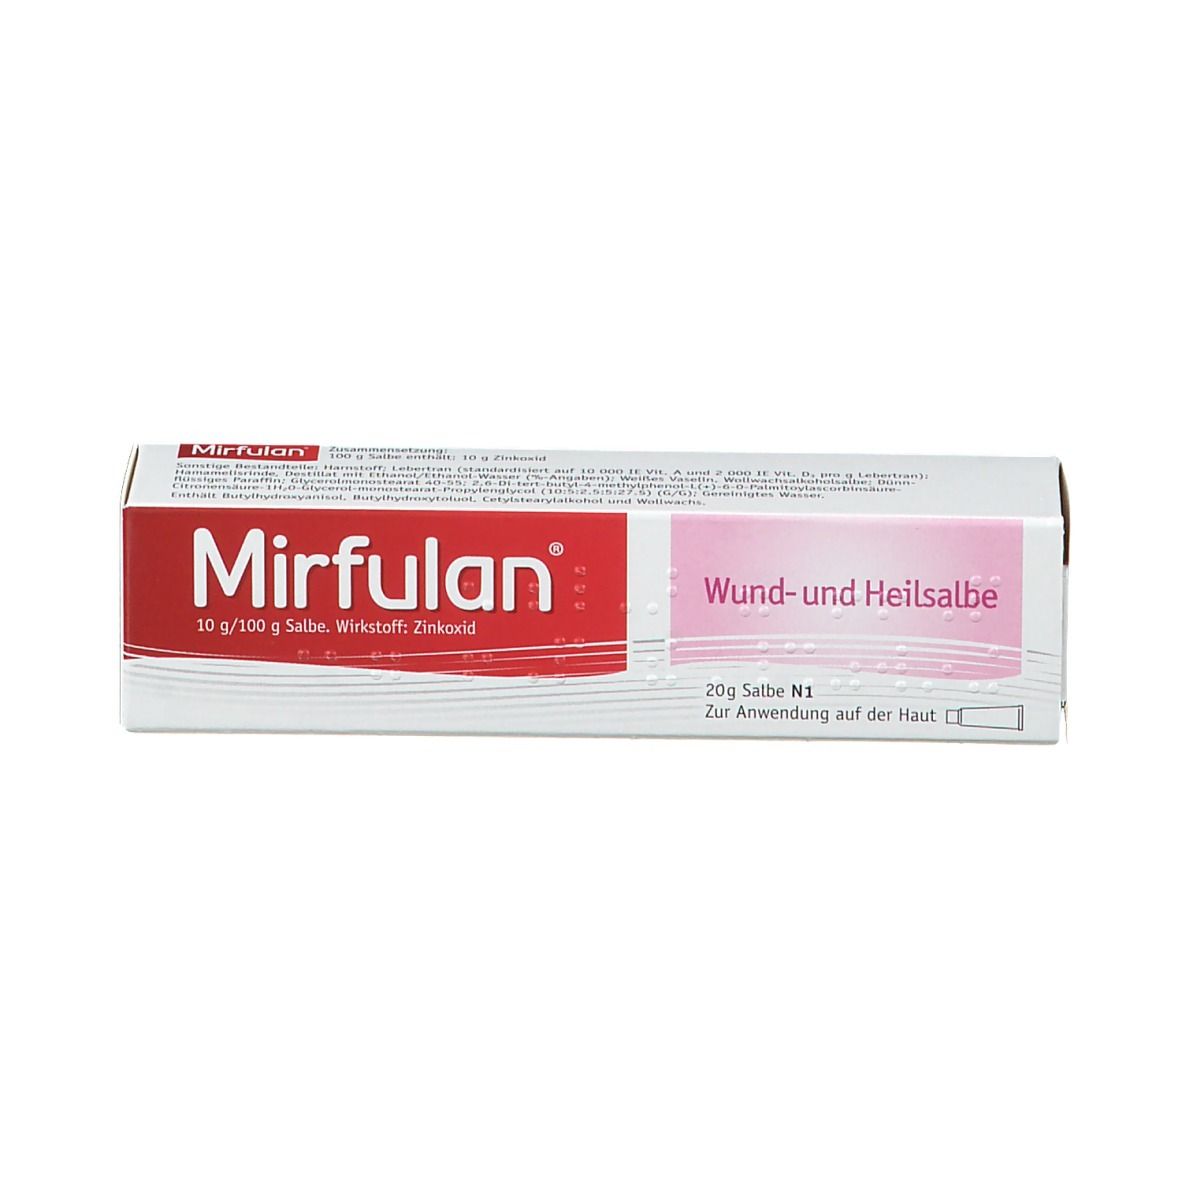 Mirfulan® Wund- und Heilsalbe